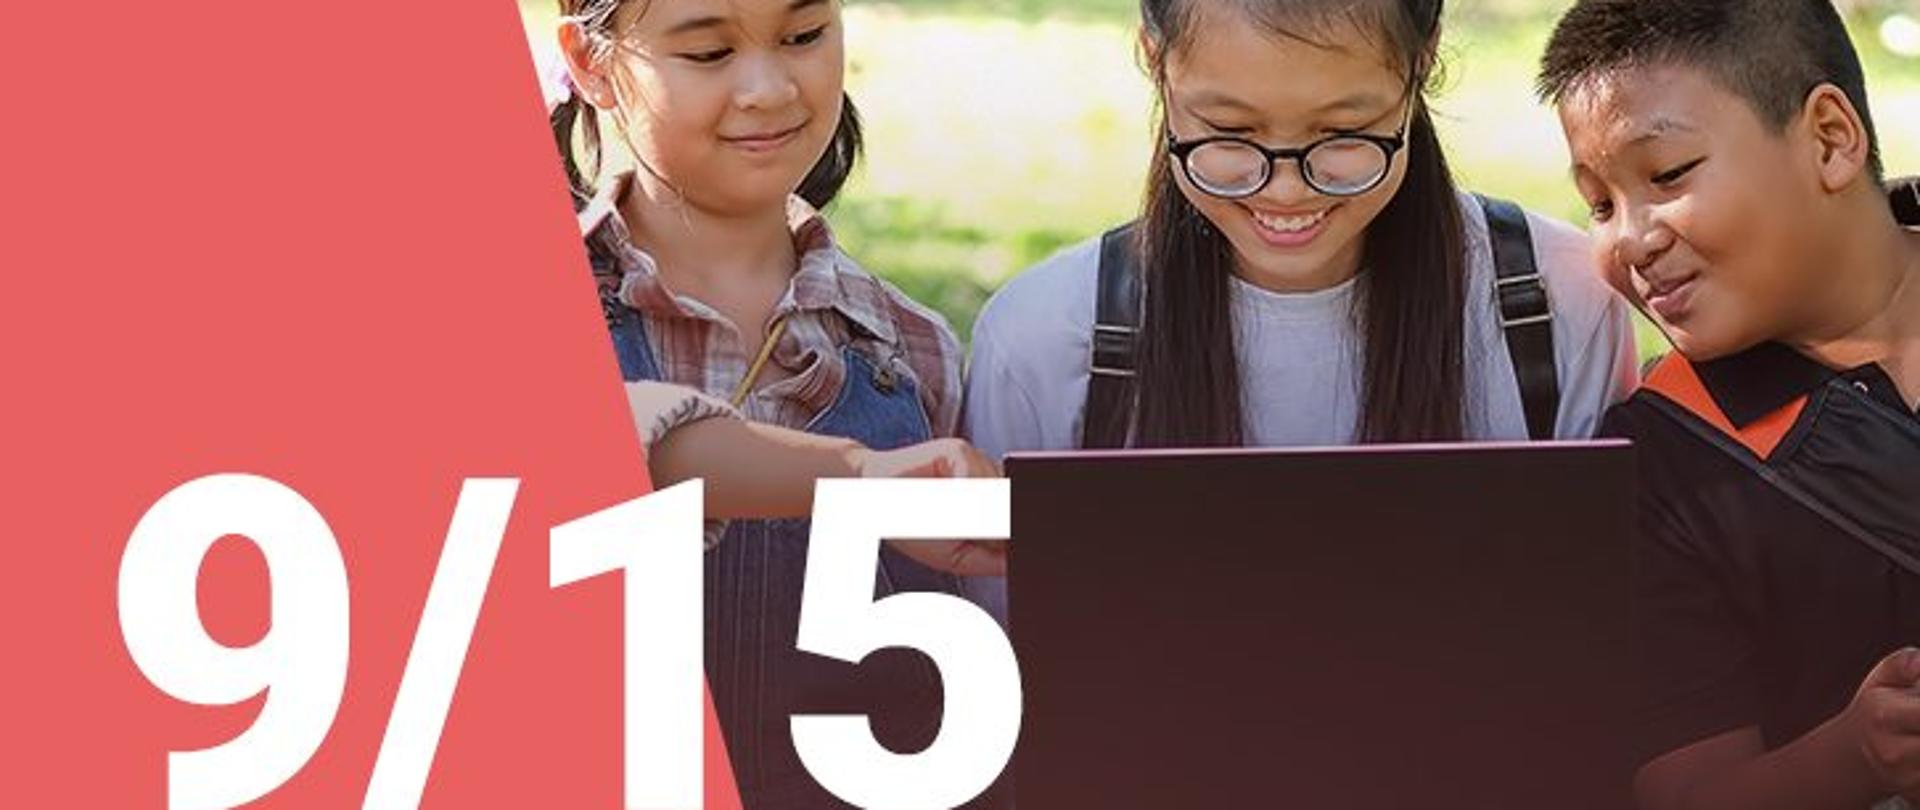 Na zdjęciu widzimy dwie dziewczynki oraz chłopca patrzących z uśmiechem na ekran laptopa. W dolnym lewym roku widoczna jest numeracja zdjęcia (9/15) 